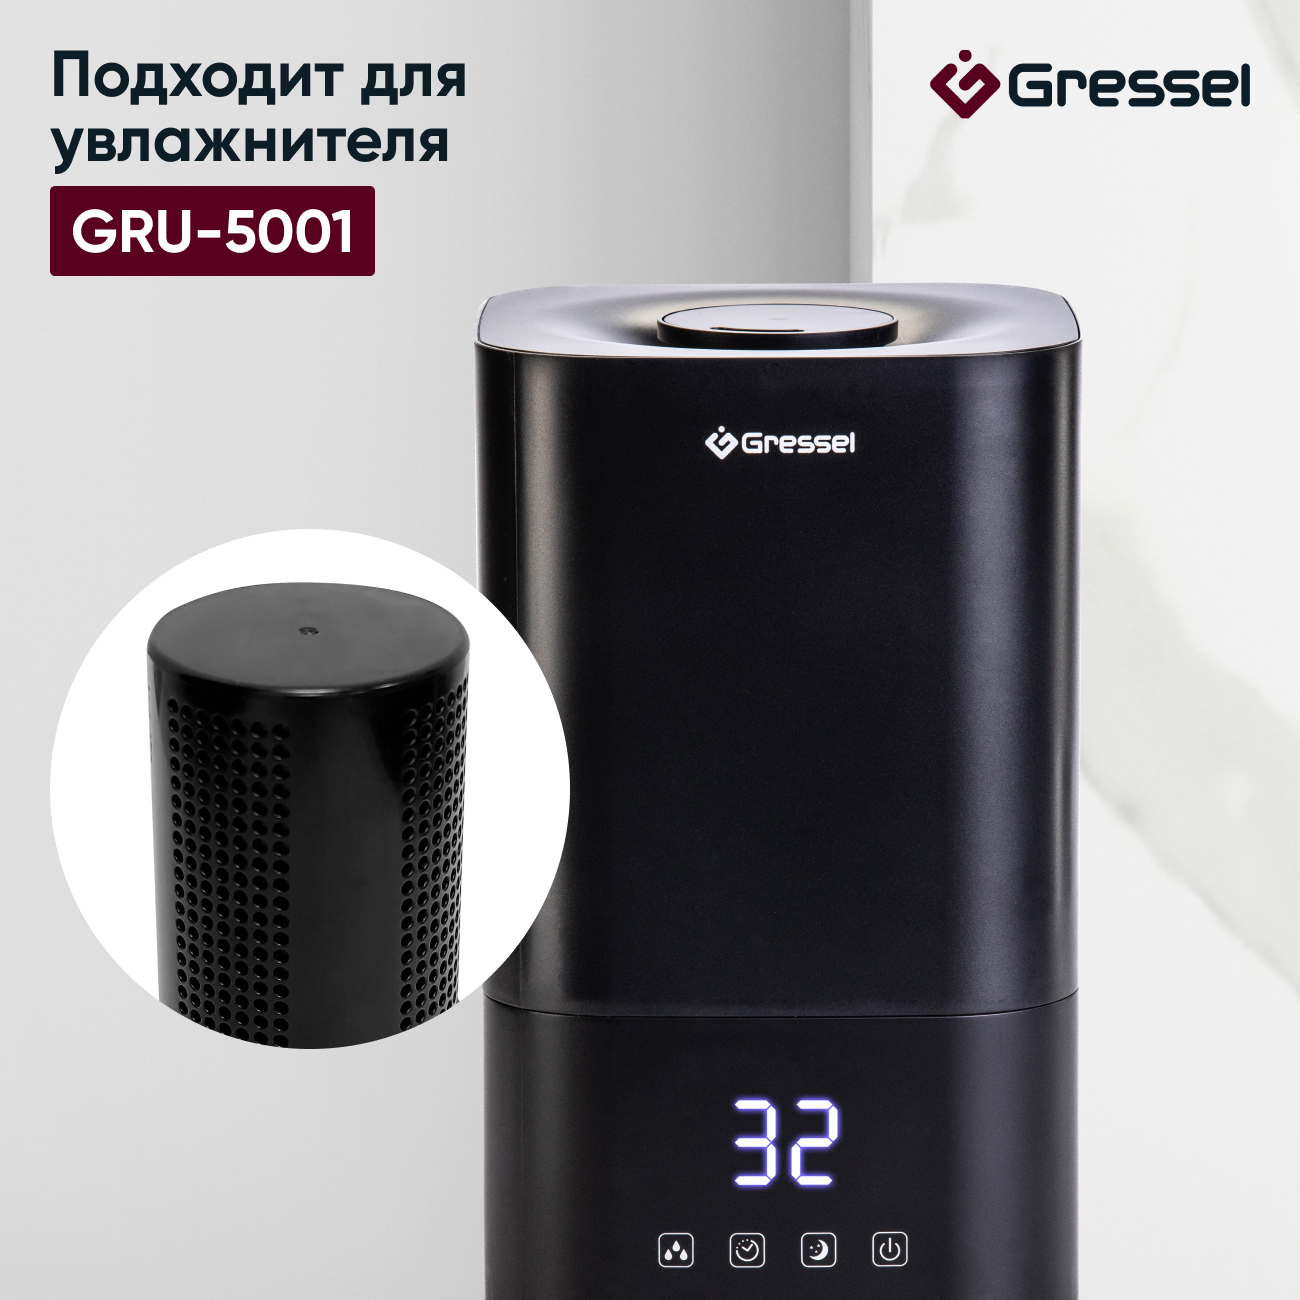 Фильтр увлажнителя воздуха Gressel G-5001 для модели GRU-5001 гриль и шашлычница tuarex tk 5001 серебристый черный